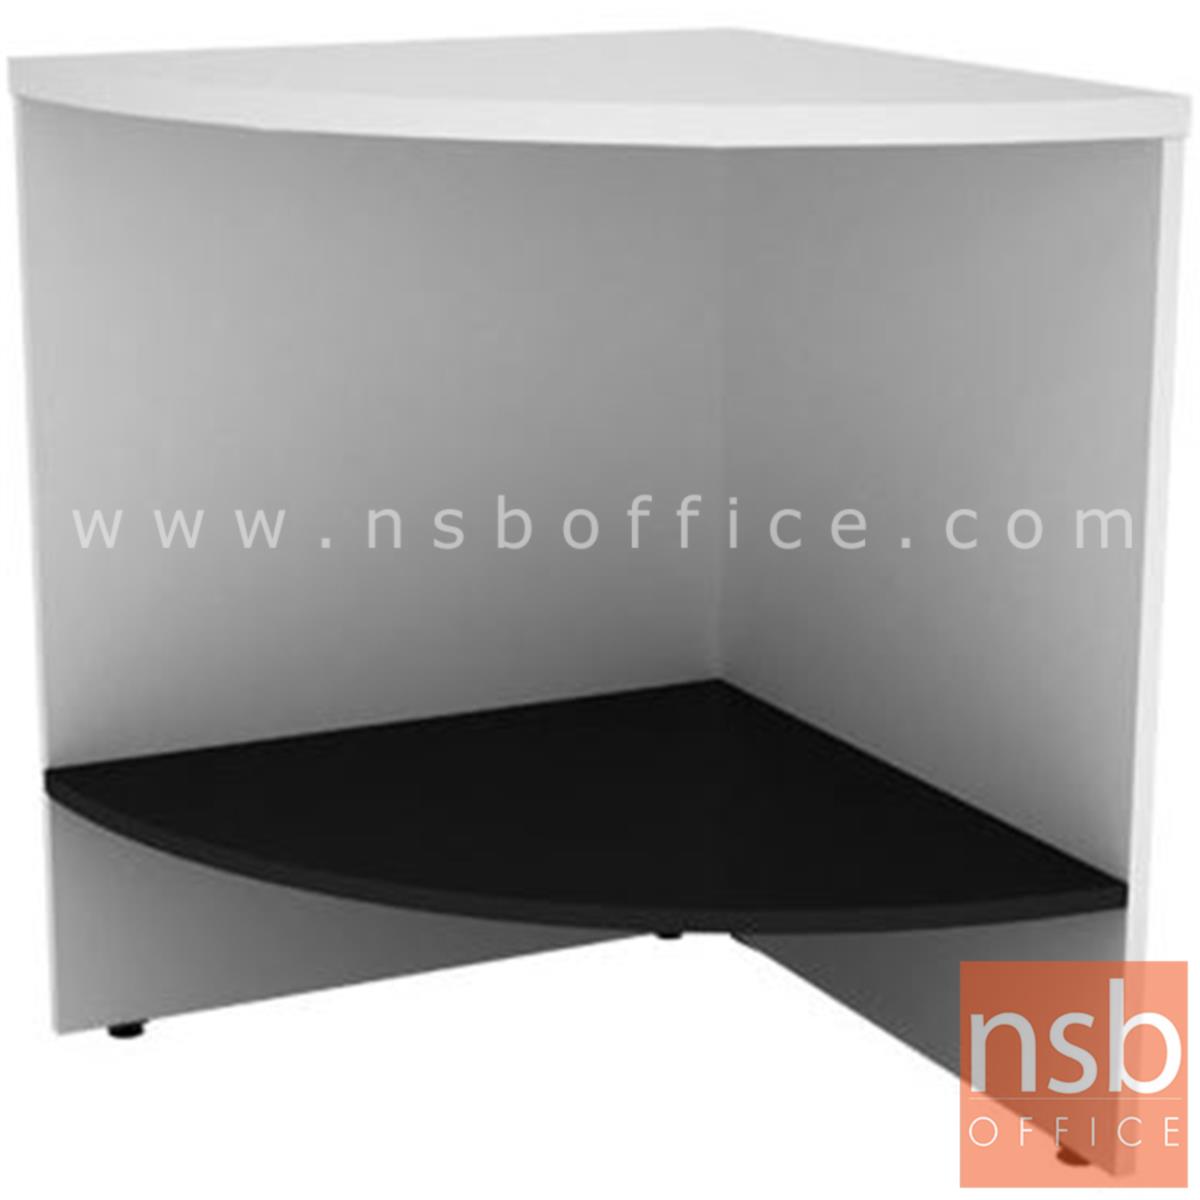 A15A005:โต๊ะเข้ามุม รุ่น Annex (แอนเน็กซ์) ขนาด 60W cm. เมลามีน สีเวงเก้-ขาว